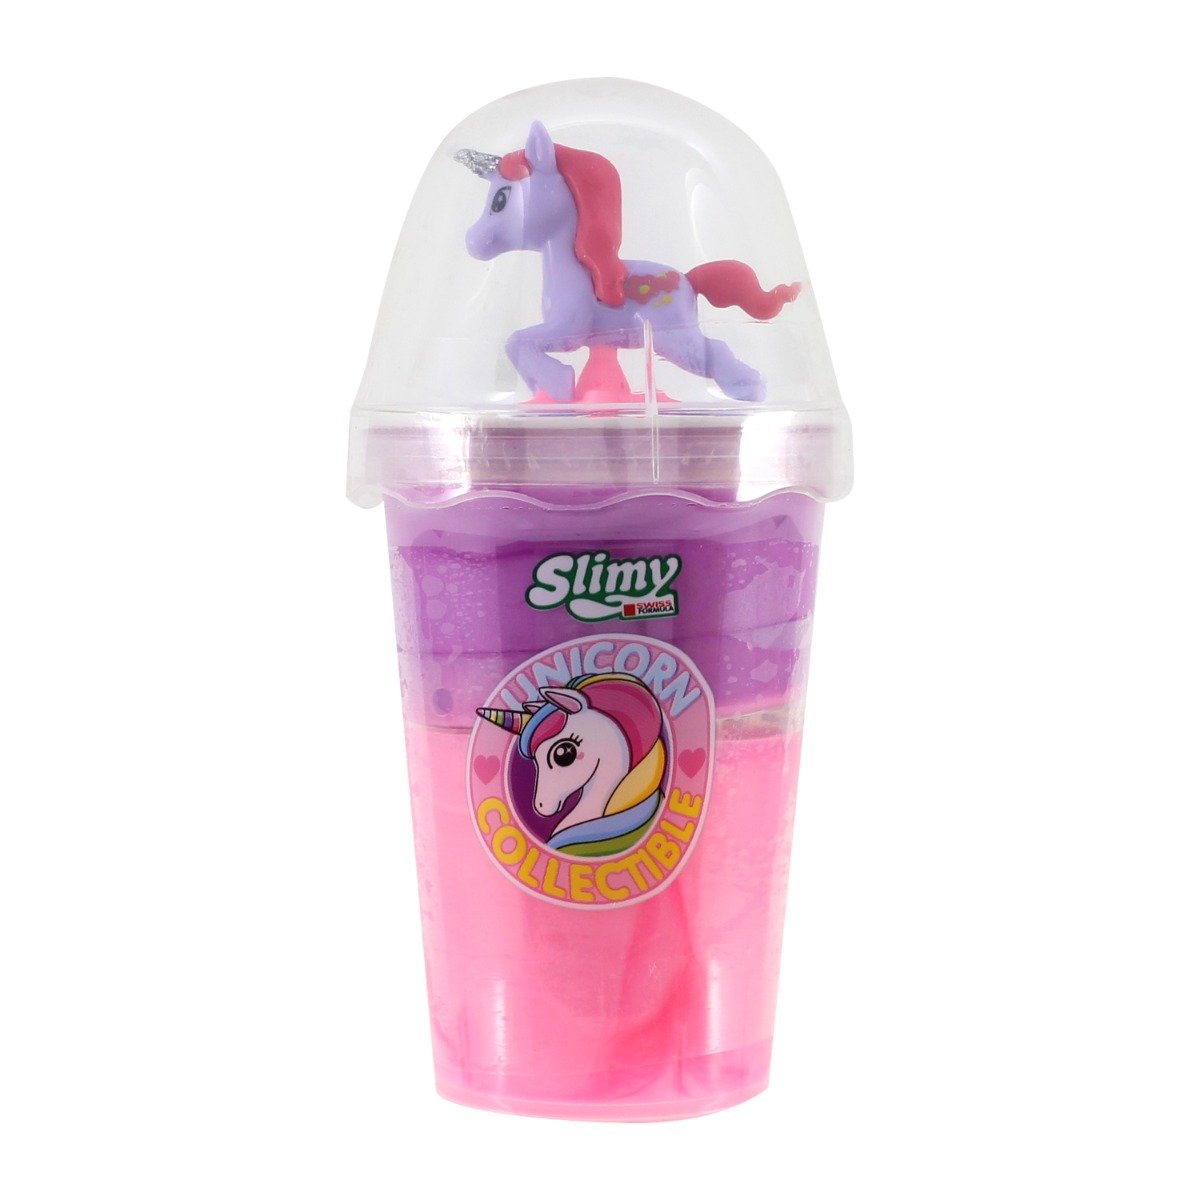 Poze Slime cu Unicorn, Slimy, 155 g